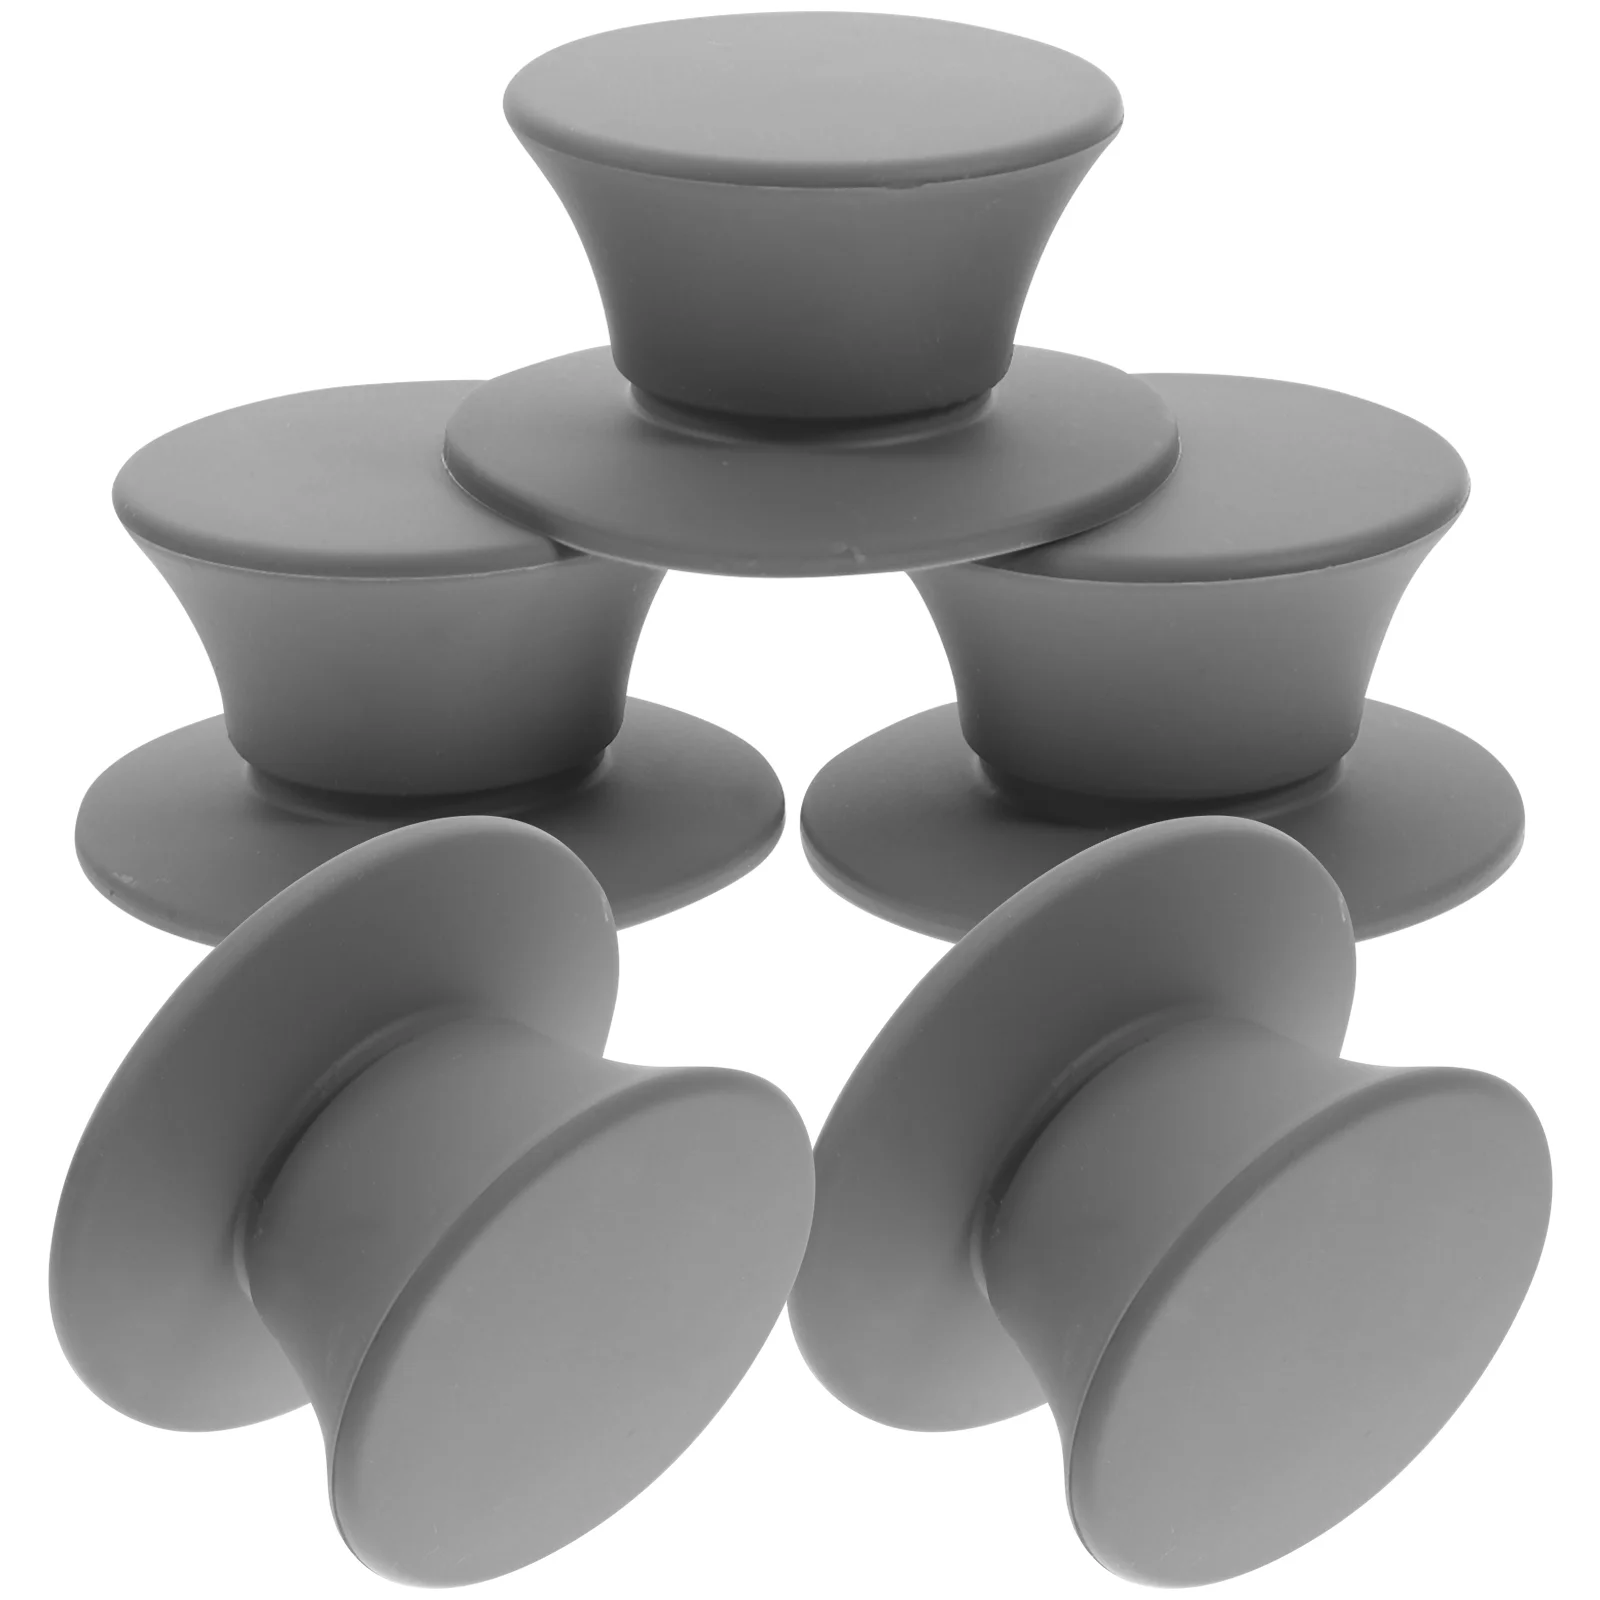 

5 Pcs Grip Universal Pot Lid Cookware Replacement Handle Pots Pans Holding Handles Iron Knob